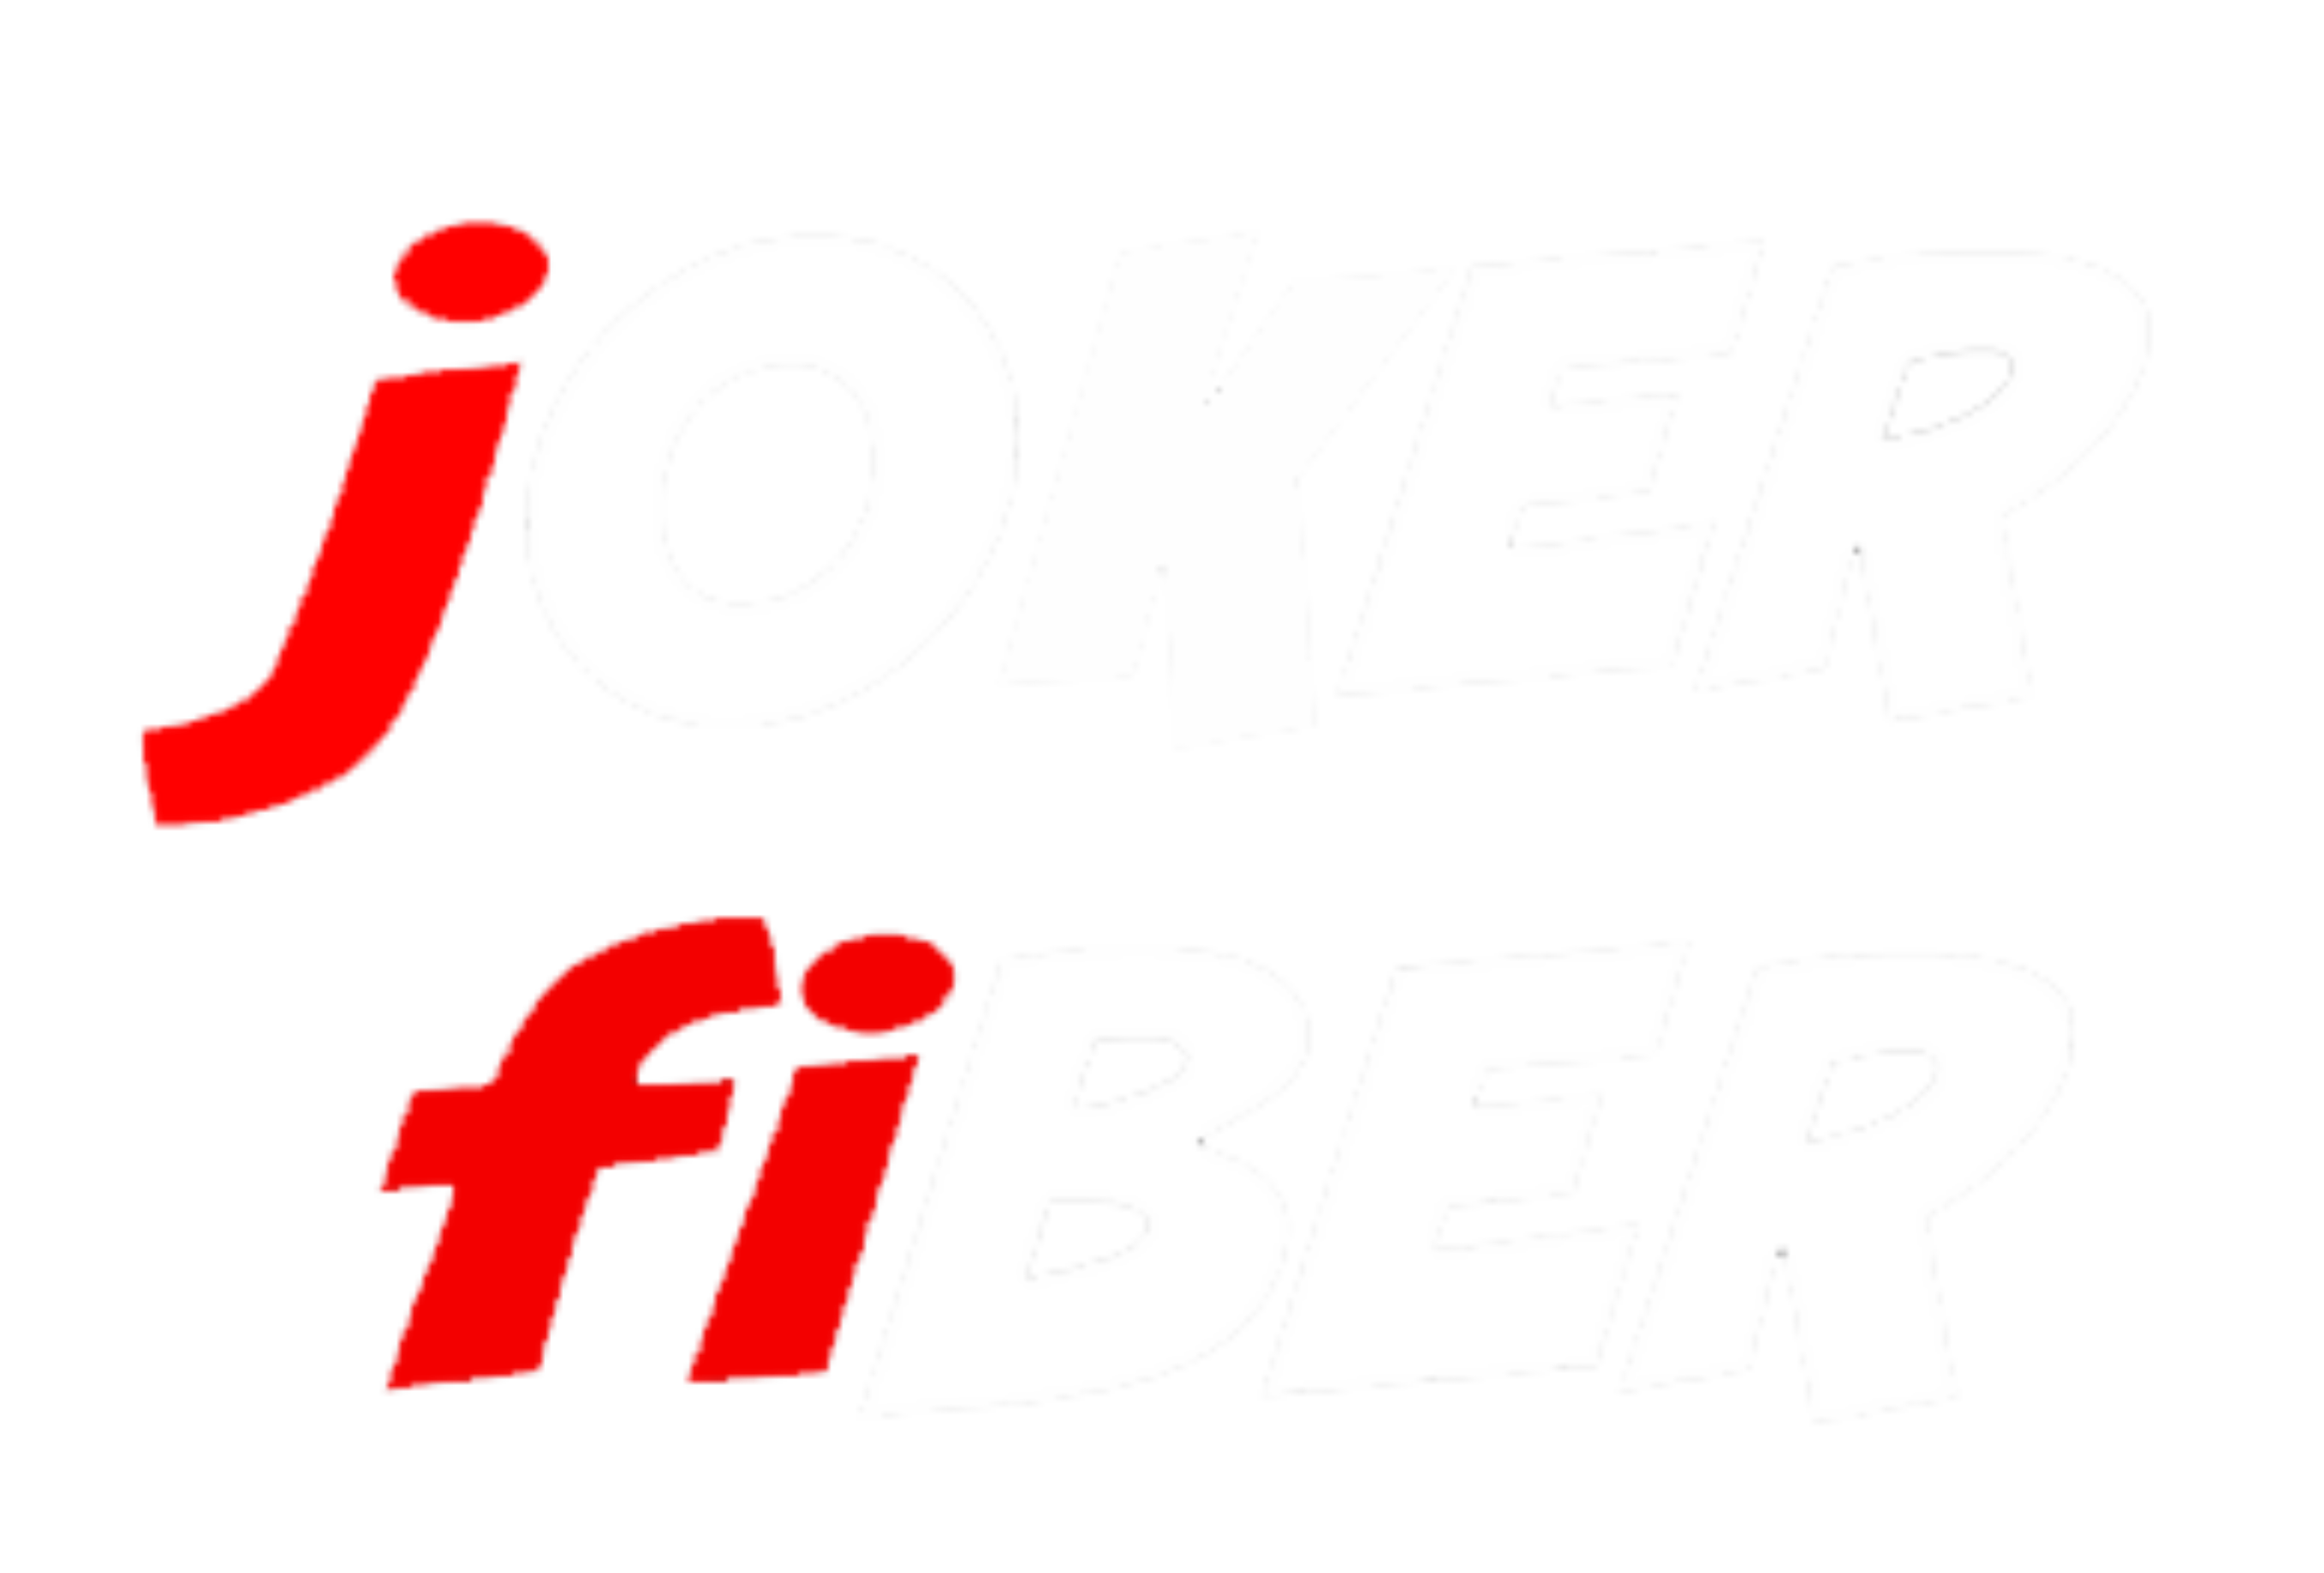 jOKER fiBER